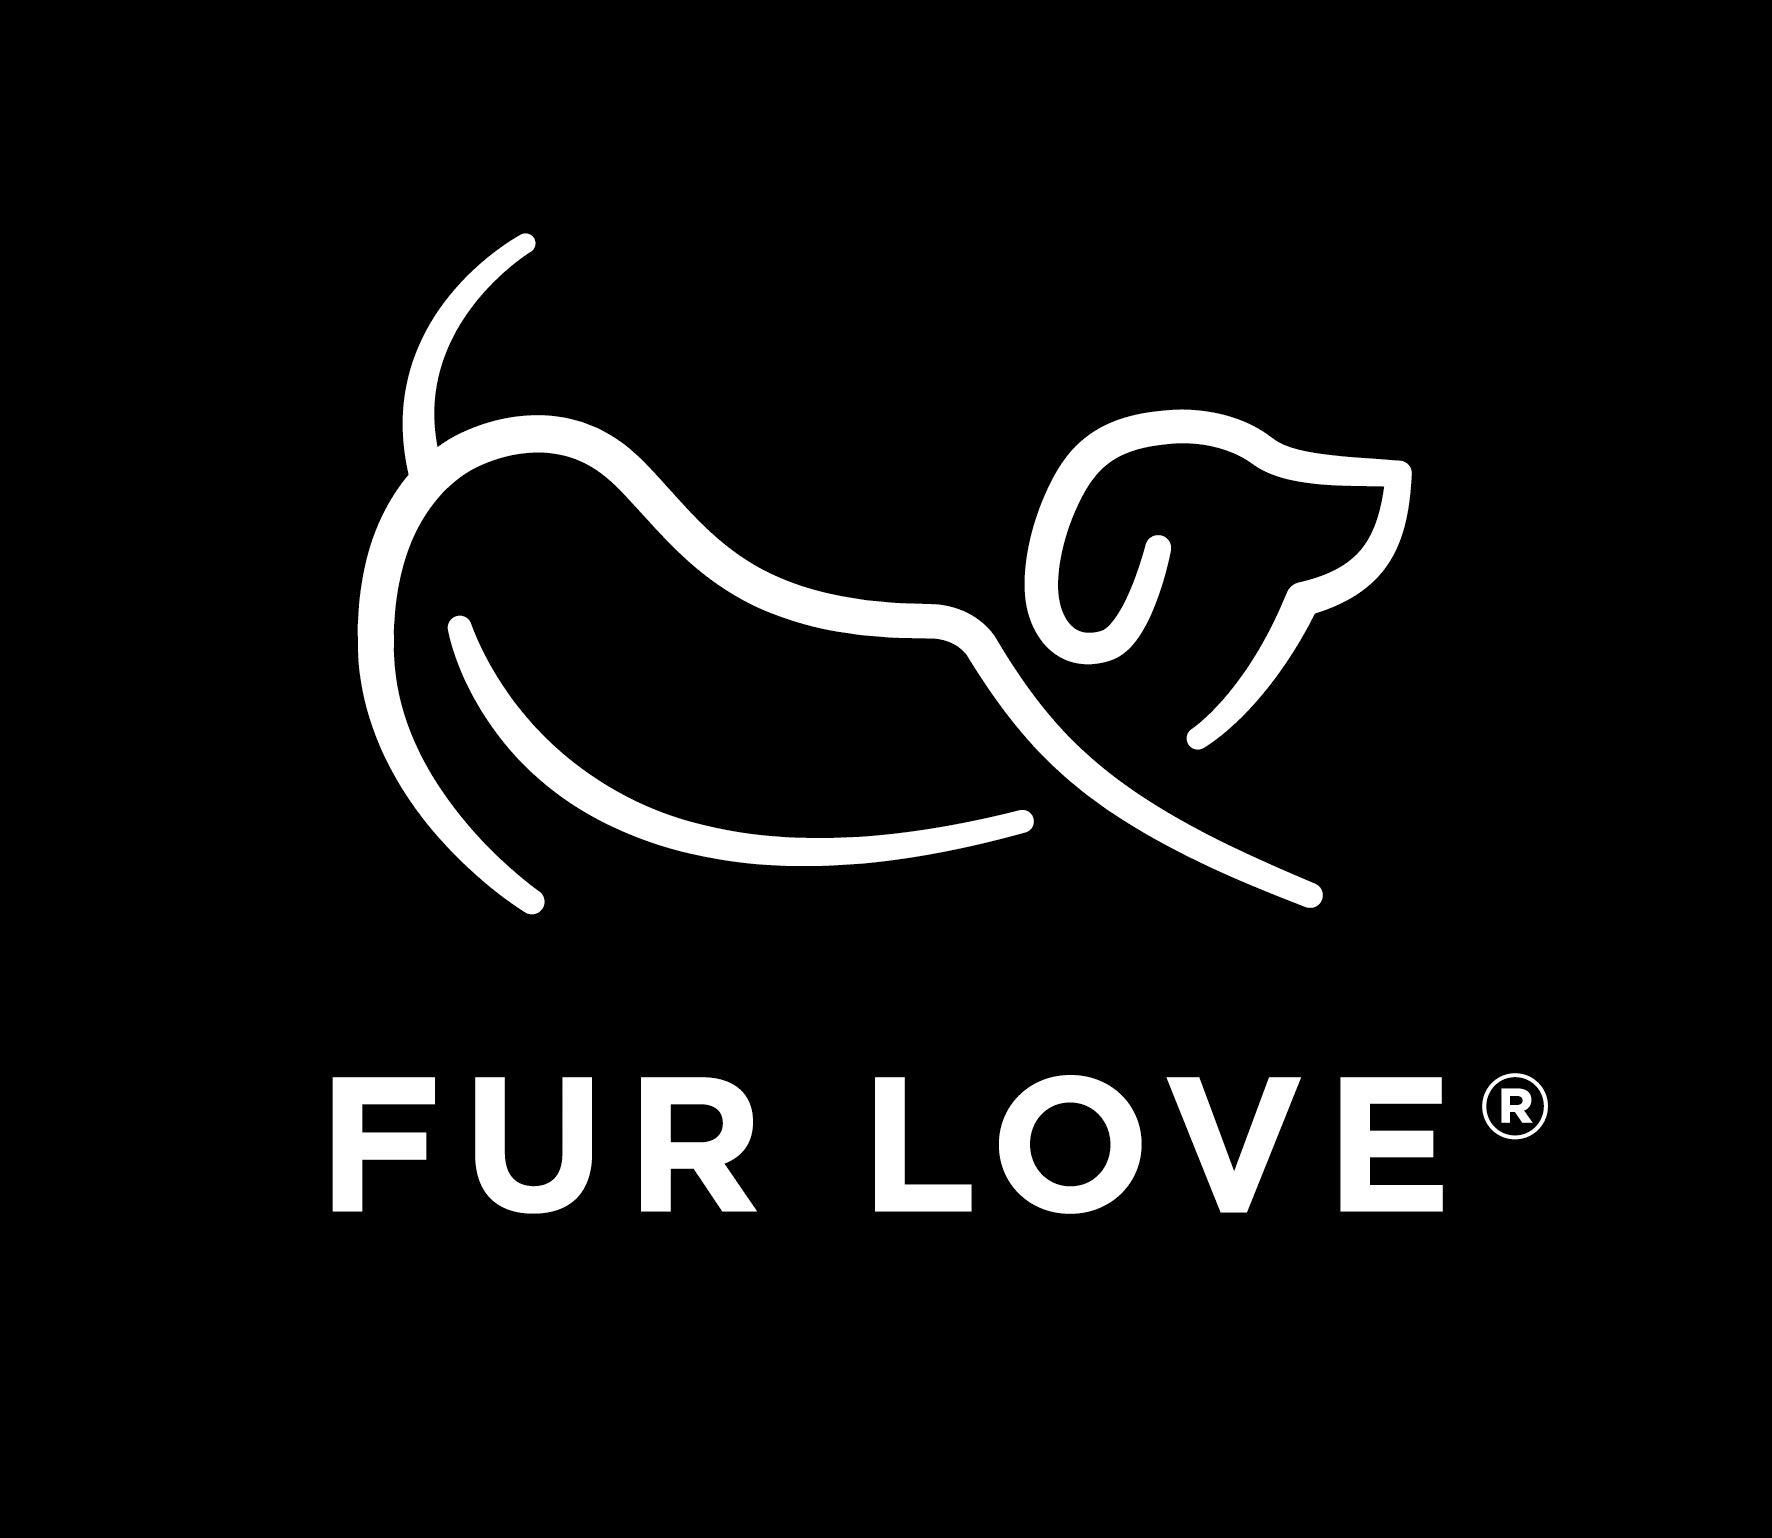 Fur Love